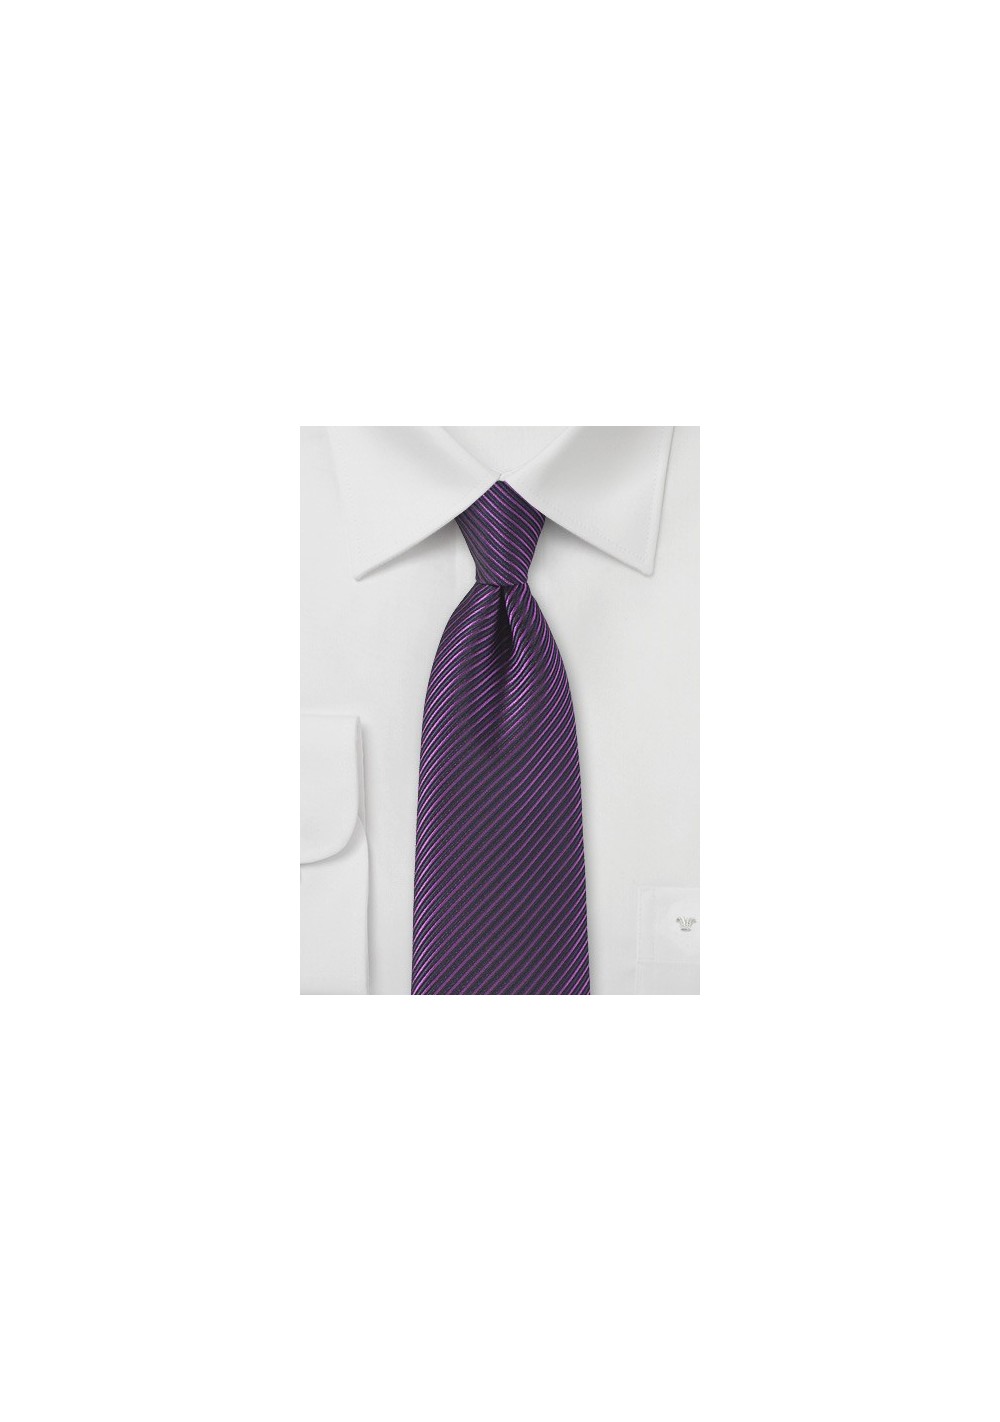 Striped Tie in Grape Purple and Black